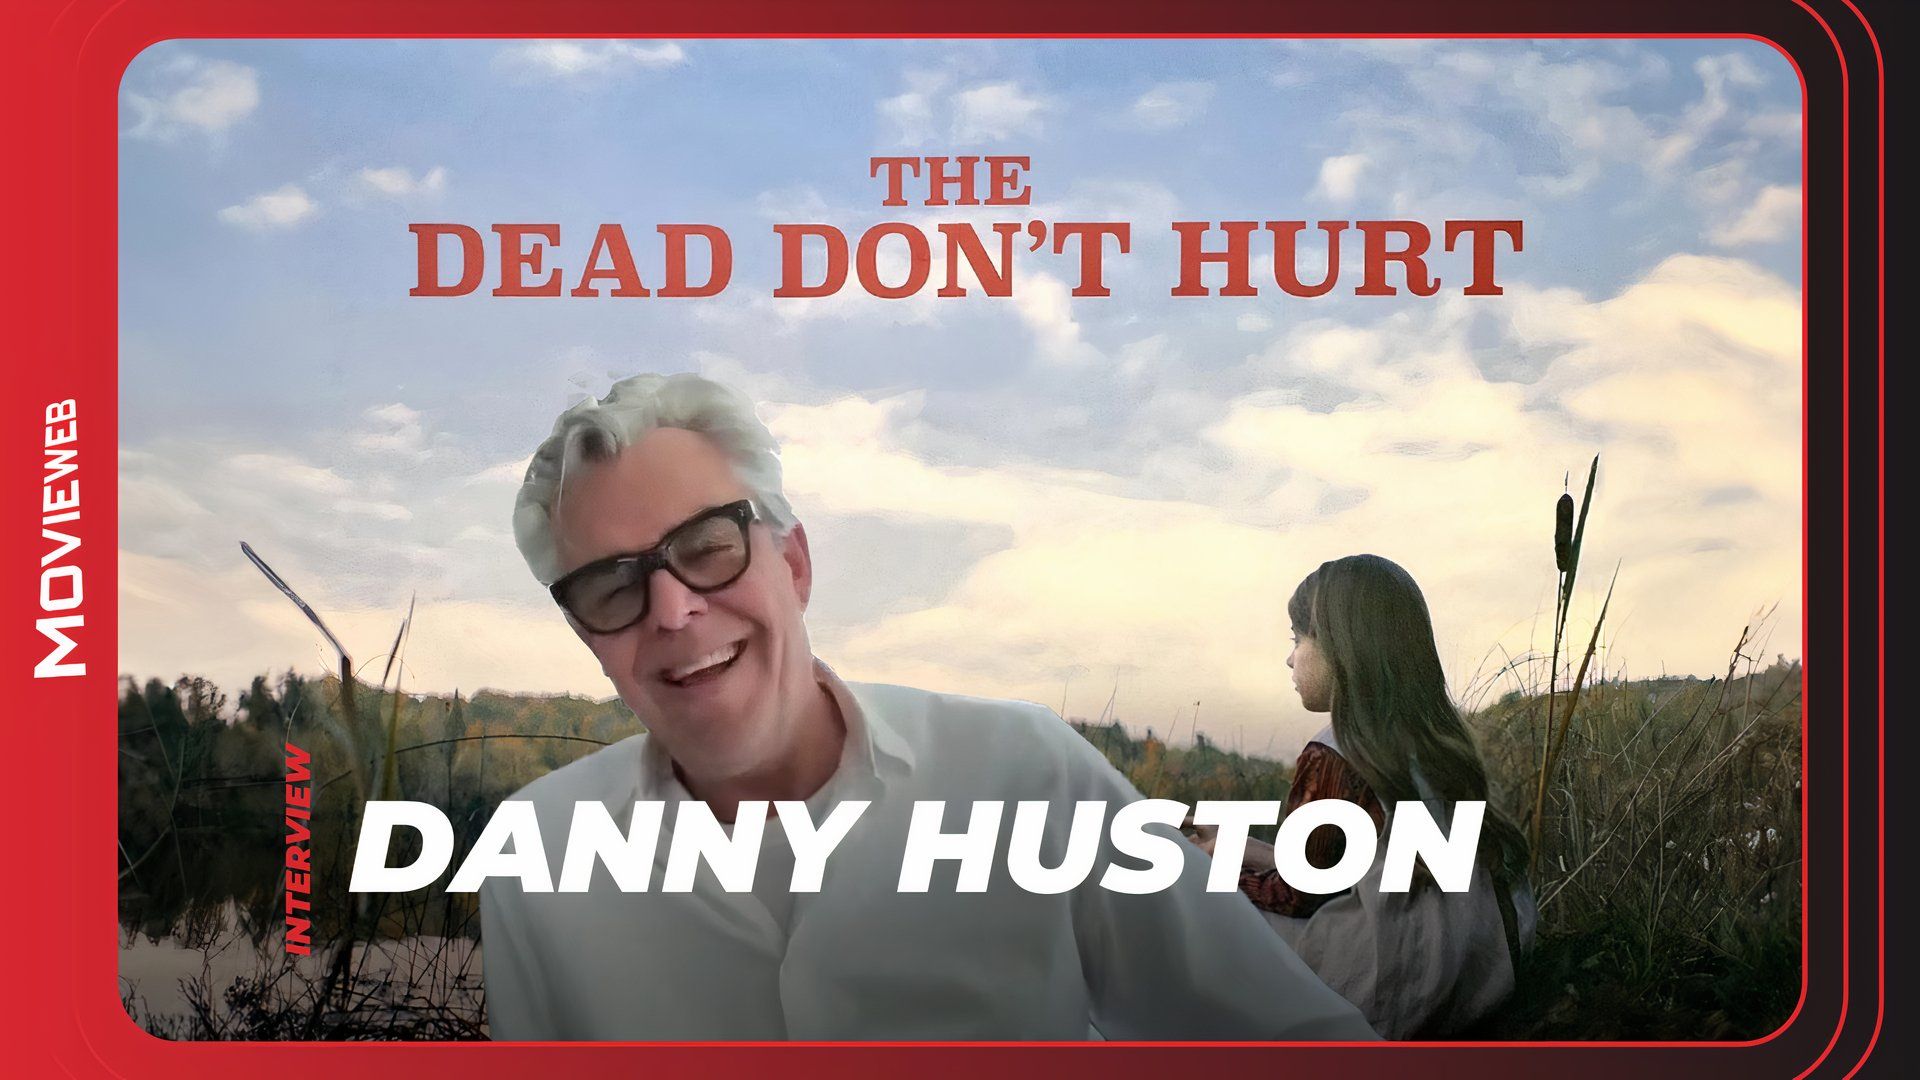 Дэнни Хьюстон о своих вестернах «Мертвые не больно» и «Горизонт Кевина Костнера»